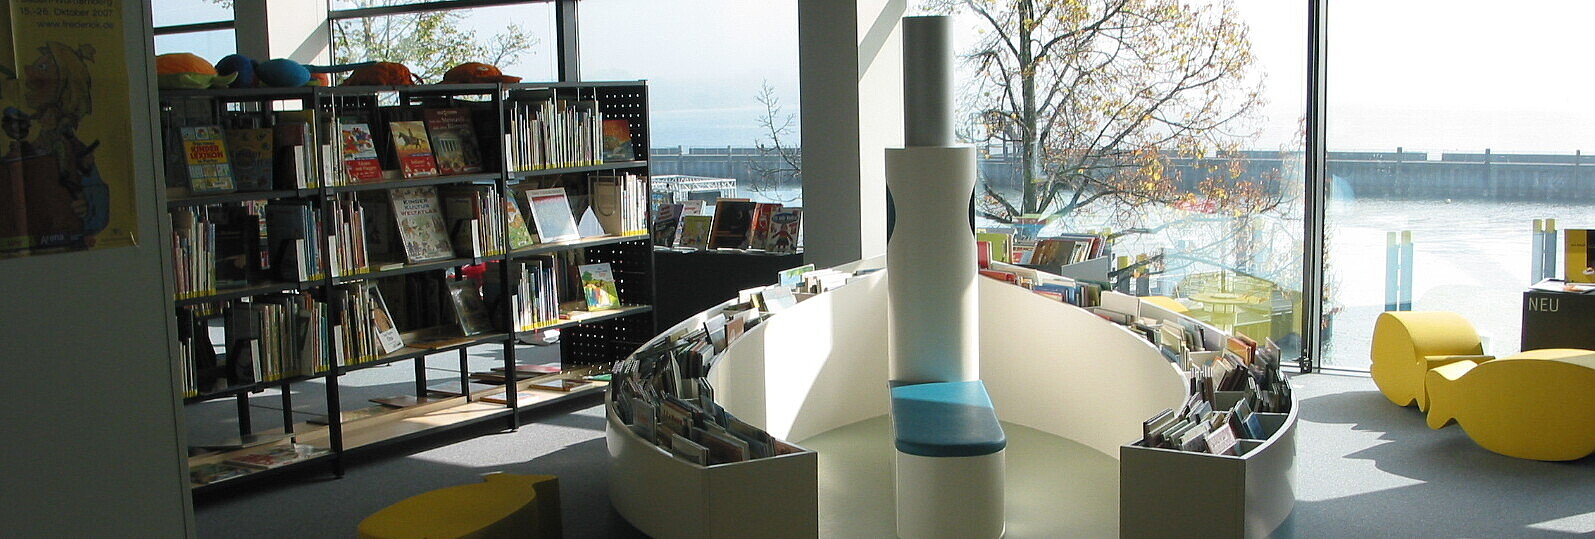 Medienhaus am See Friedrichshafen - Kinderbereich mit Leseboot